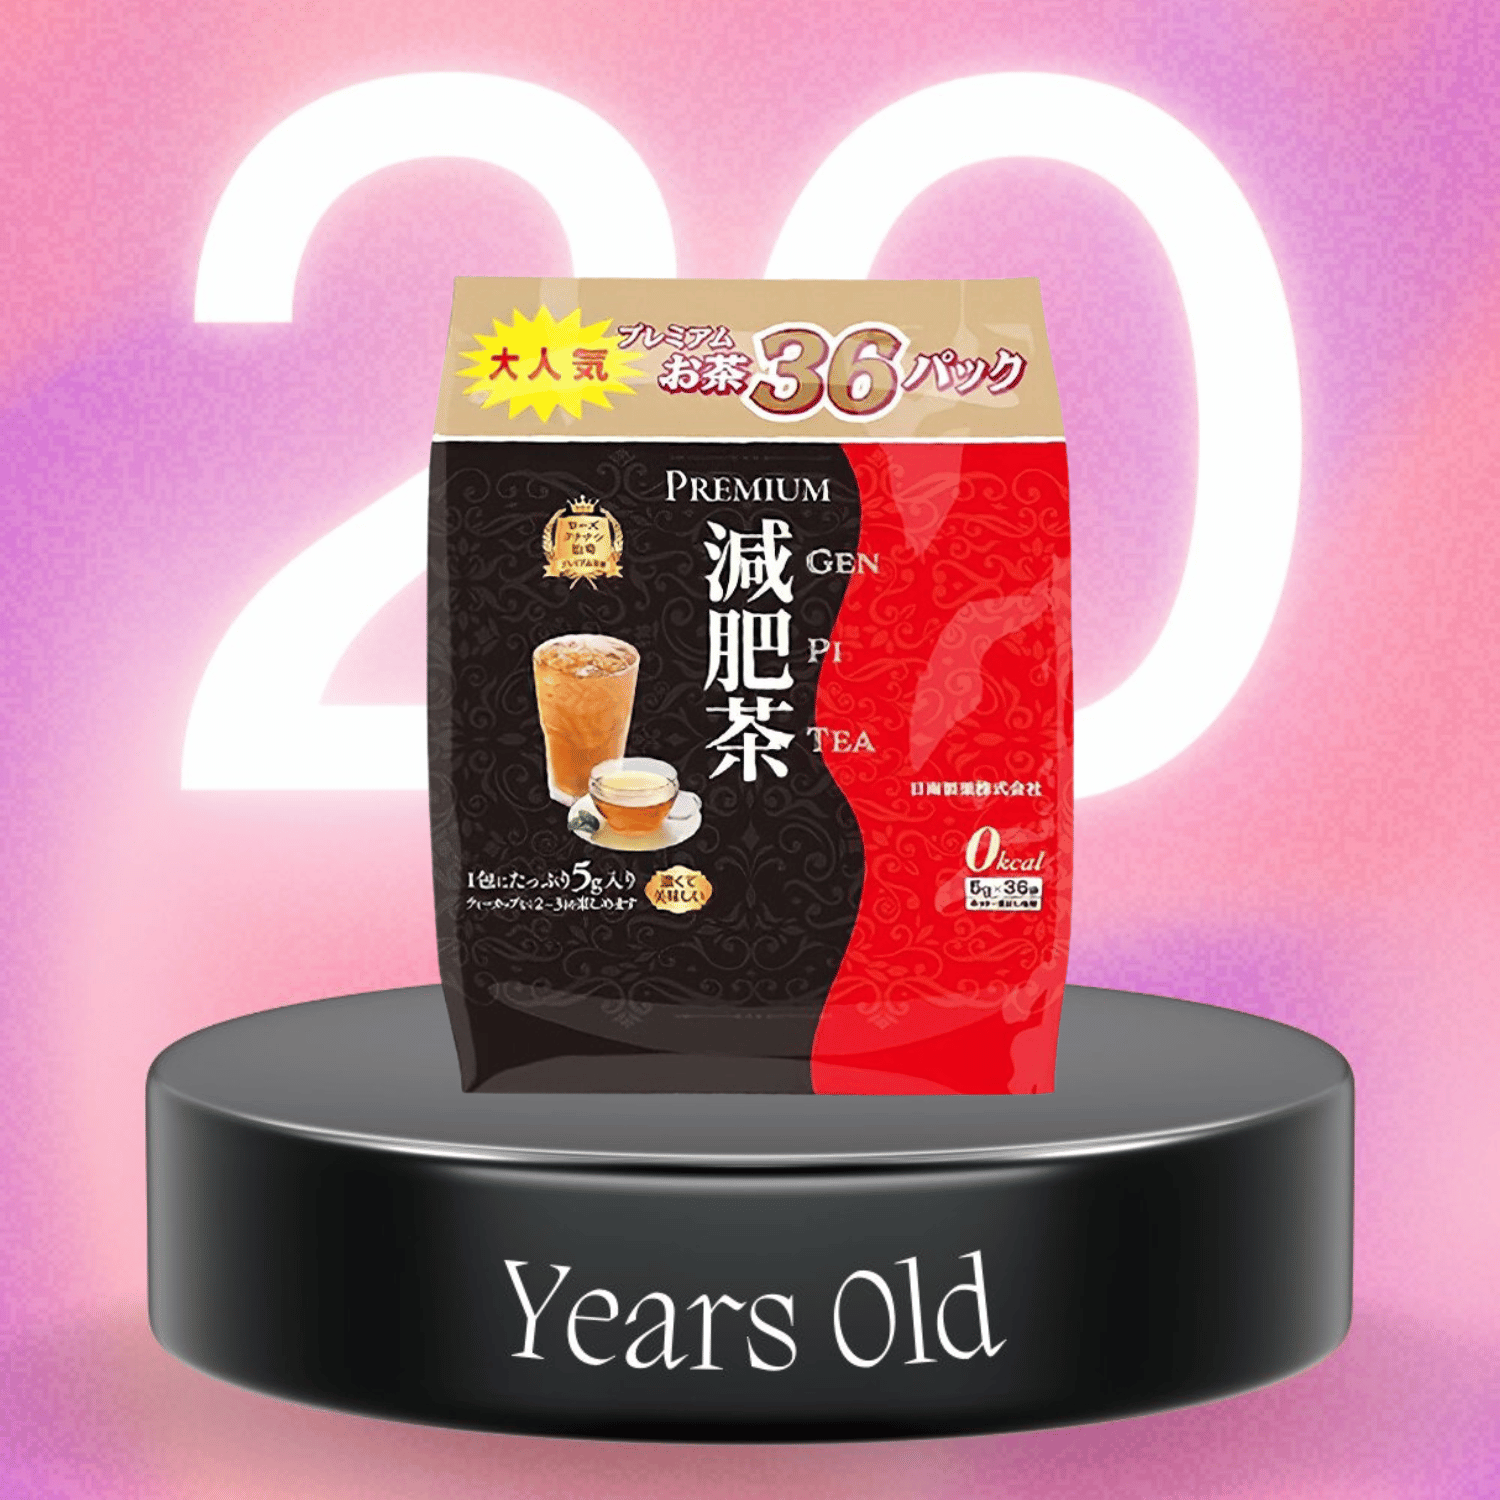 Trà Thải Độc Giảm Mỡ Hayari Premium Genpi Tea - 36 Gói